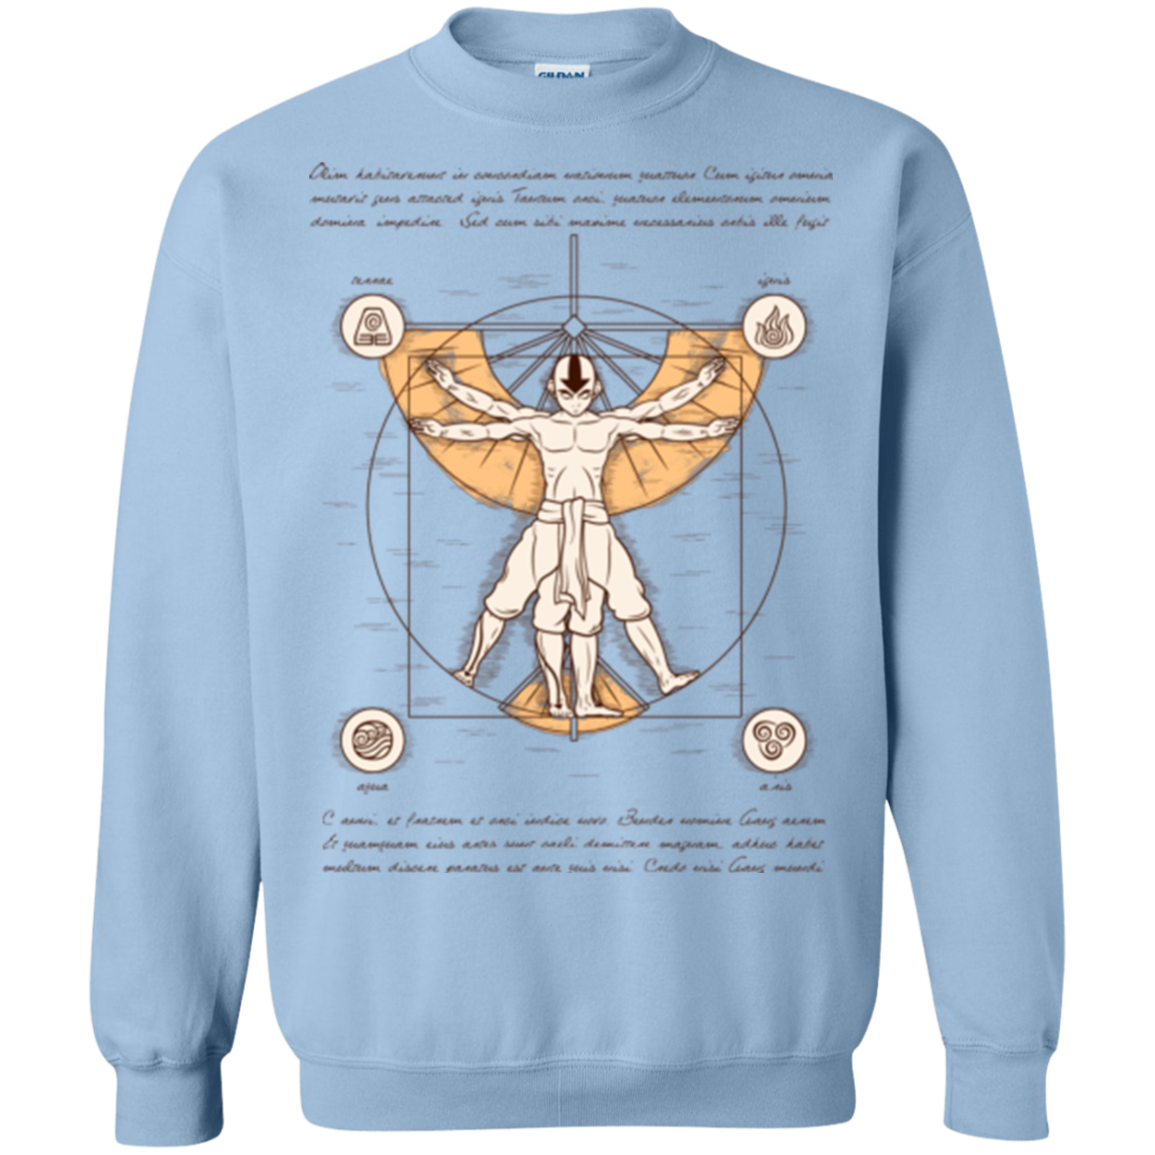 Vitruvian Aang (1) Crewneck Sweatshirt